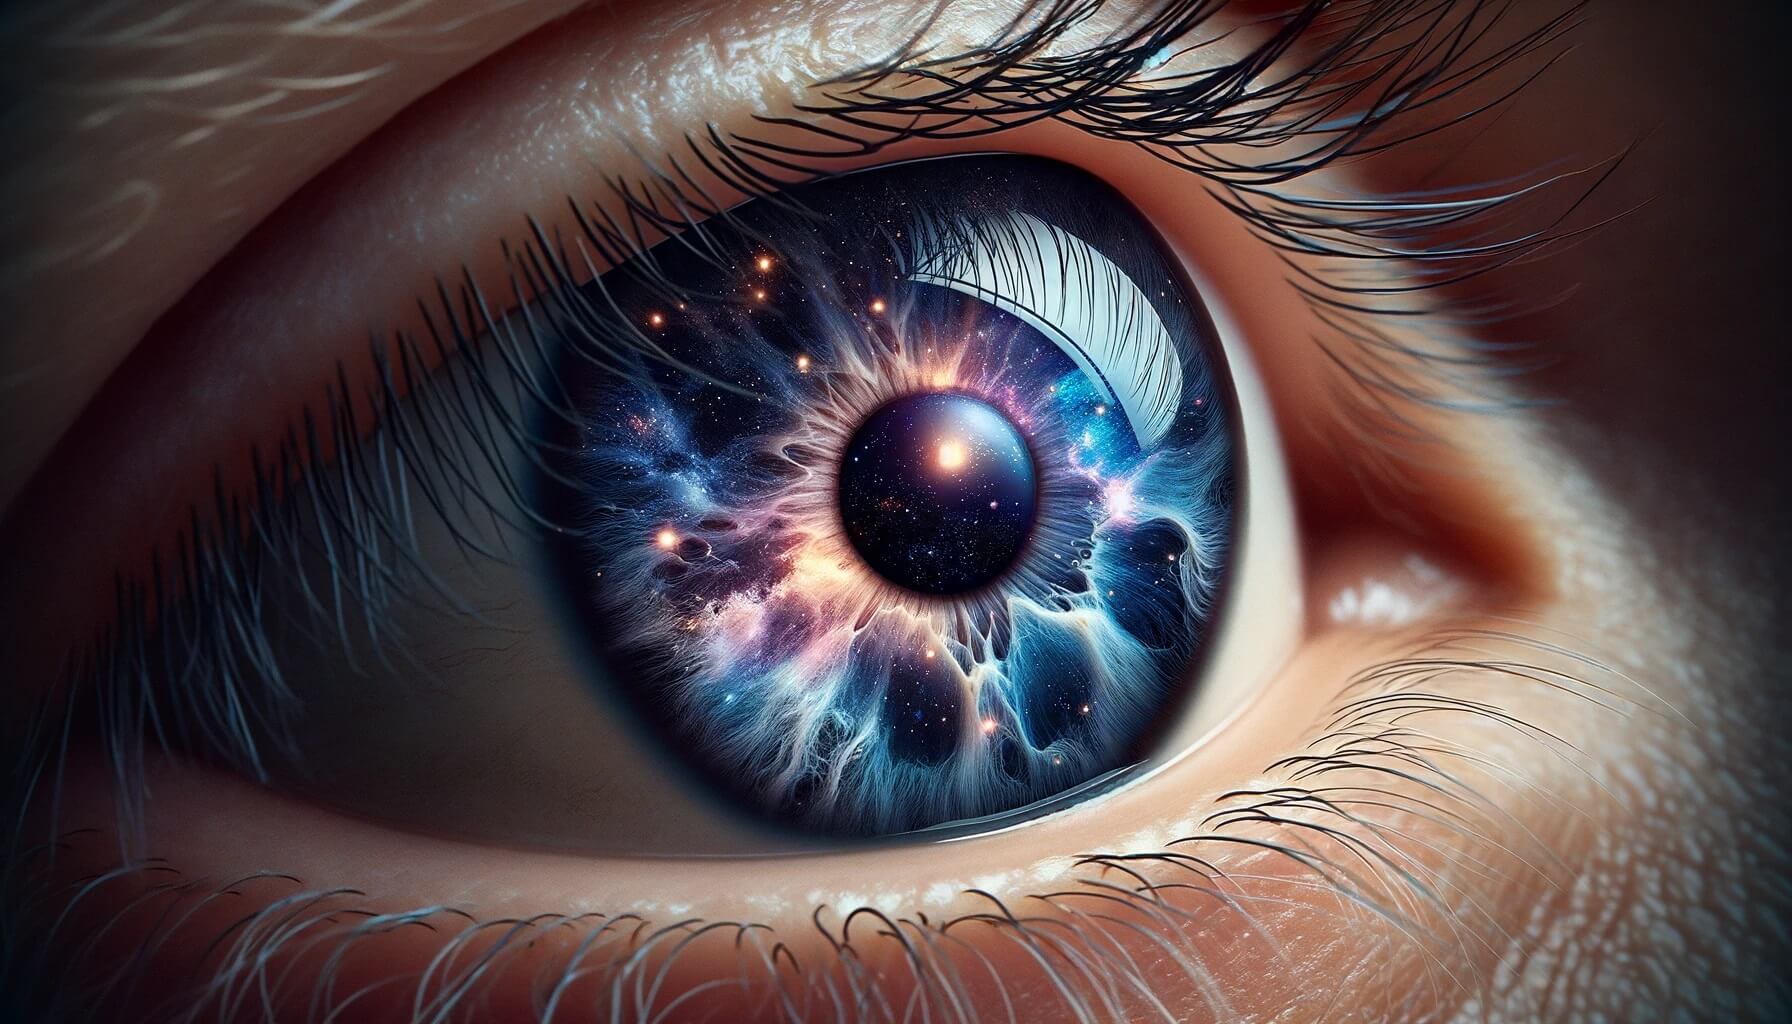 Редкое заболевание делает глаза человека красивыми как космос